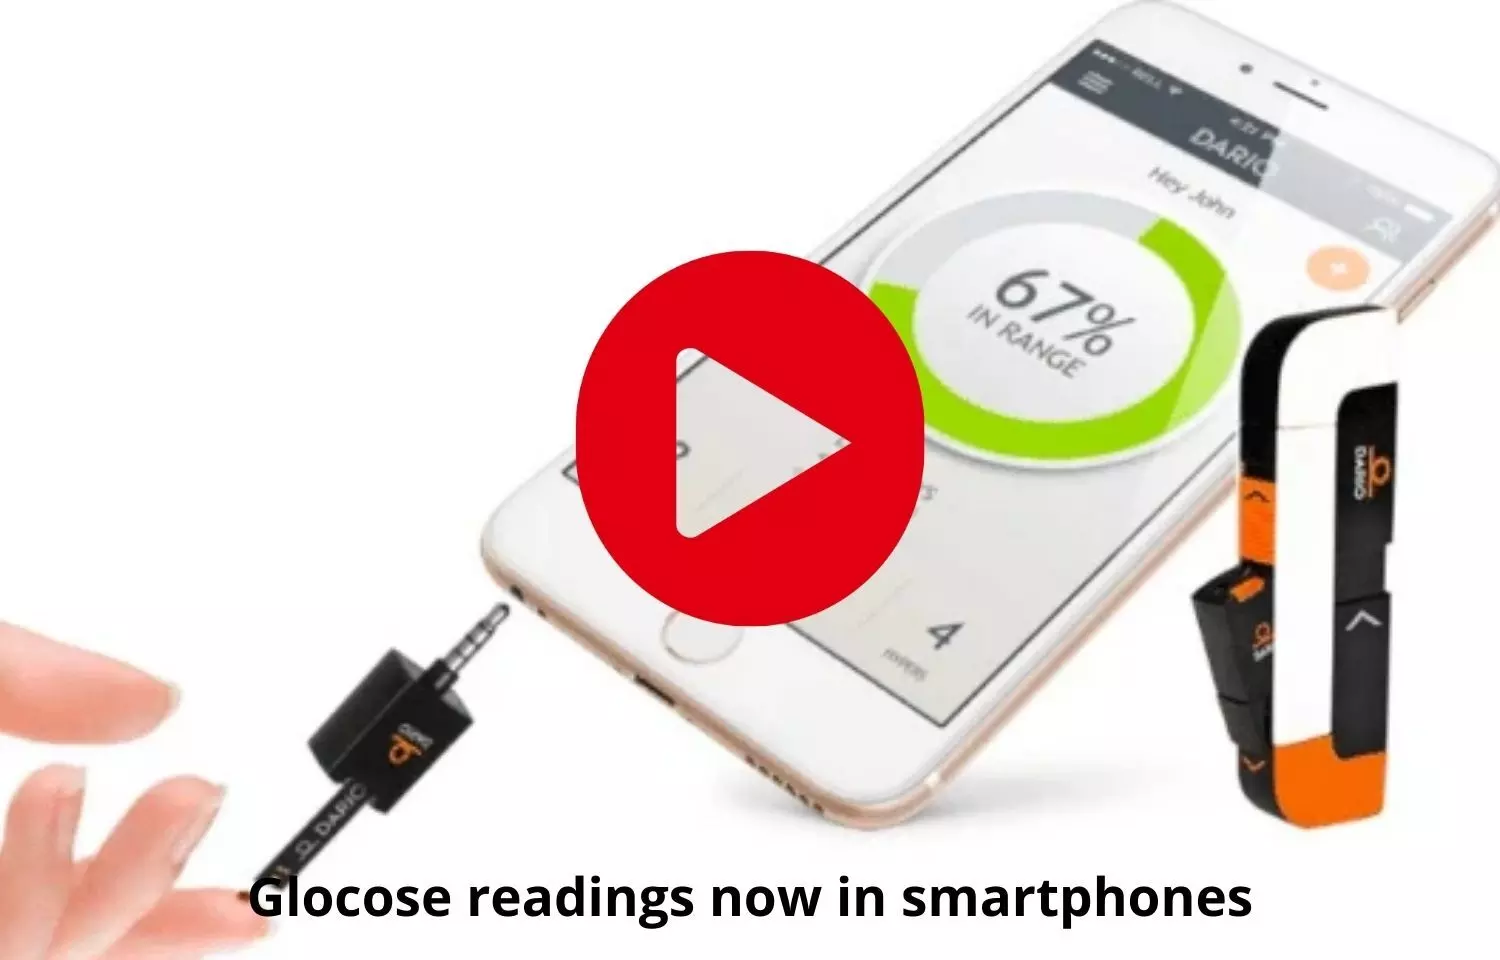 Glocose readings now in fingertips on smartphones